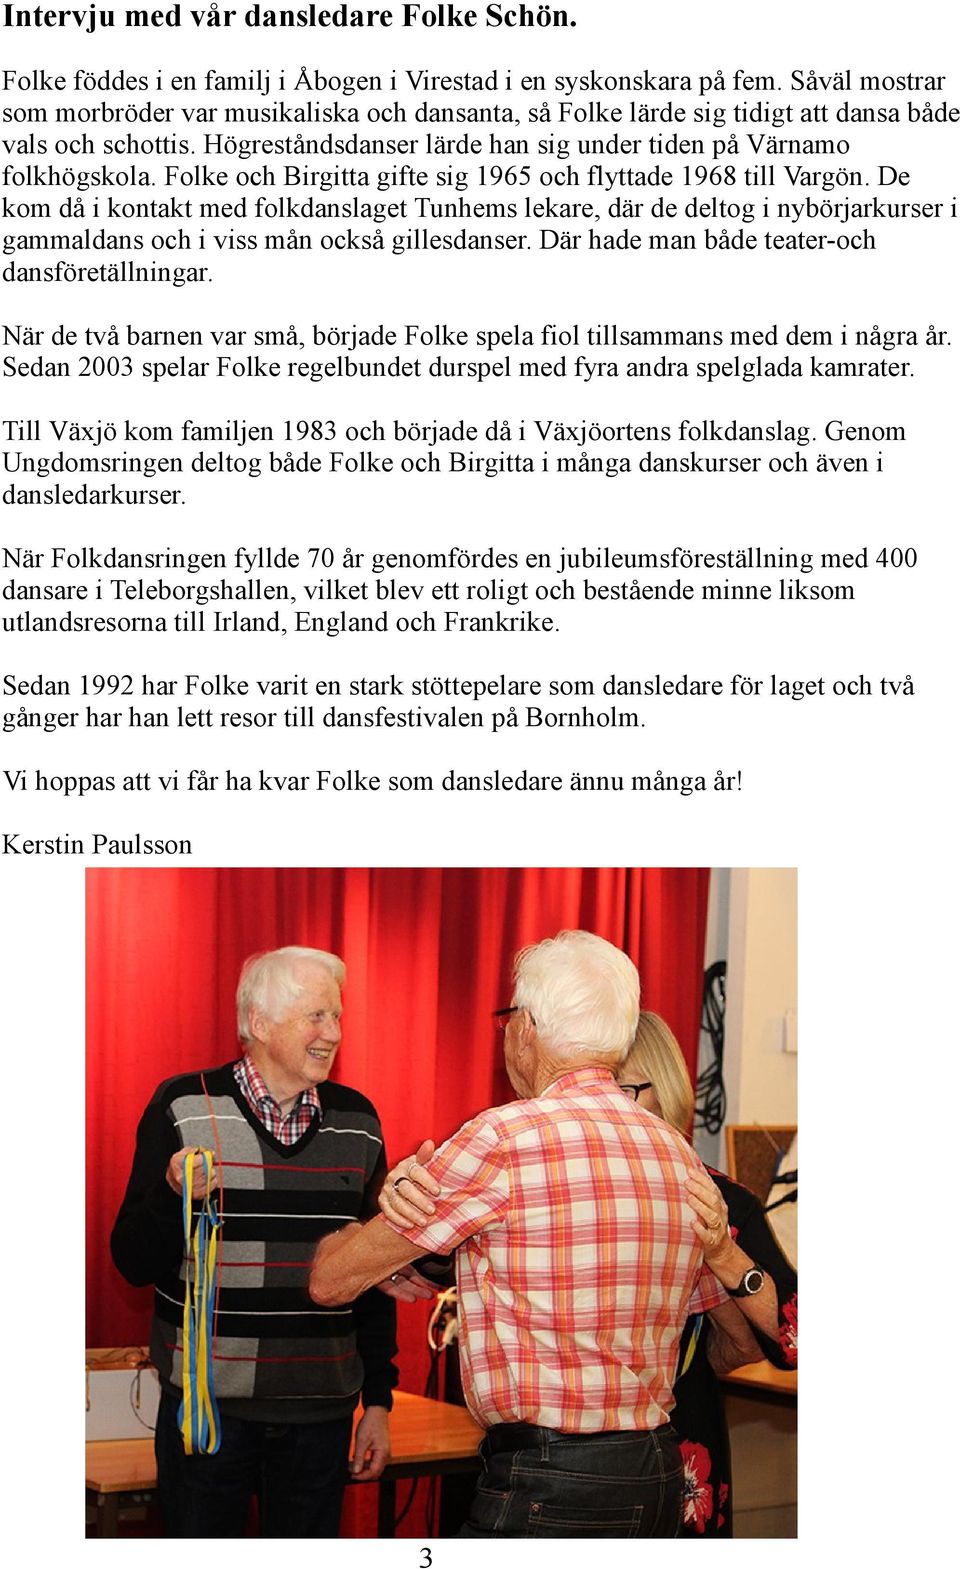 Folke och Birgitta gifte sig 1965 och flyttade 1968 till Vargön. De kom då i kontakt med folkdanslaget Tunhems lekare, där de deltog i nybörjarkurser i gammaldans och i viss mån också gillesdanser.